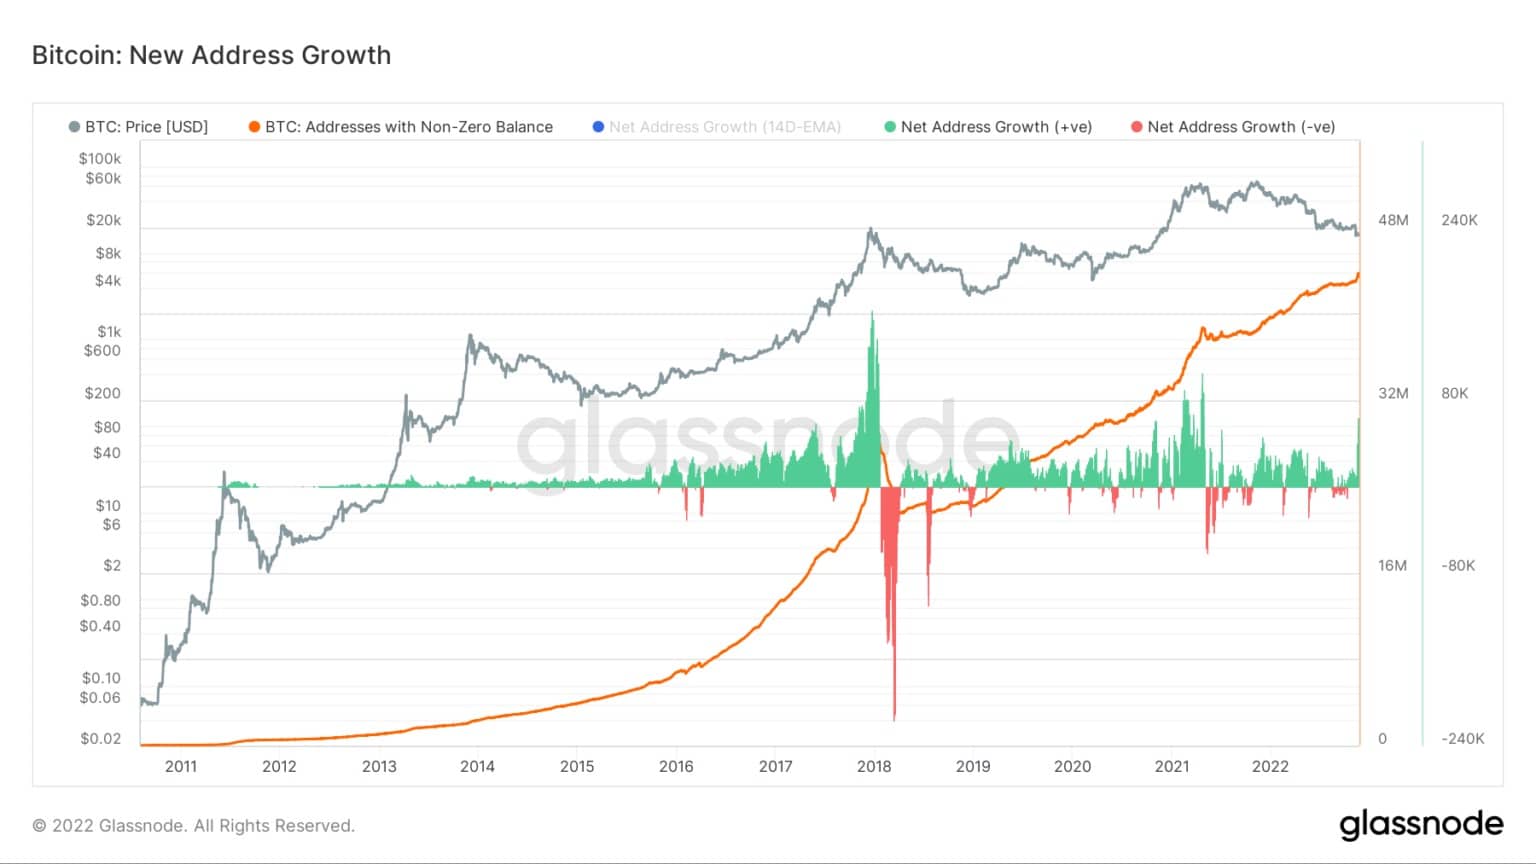 Graf znázorňující čistý růst adres v síti Bitcoin od ledna 2021 do listopadu 2022 (zdroj: Glassnode)